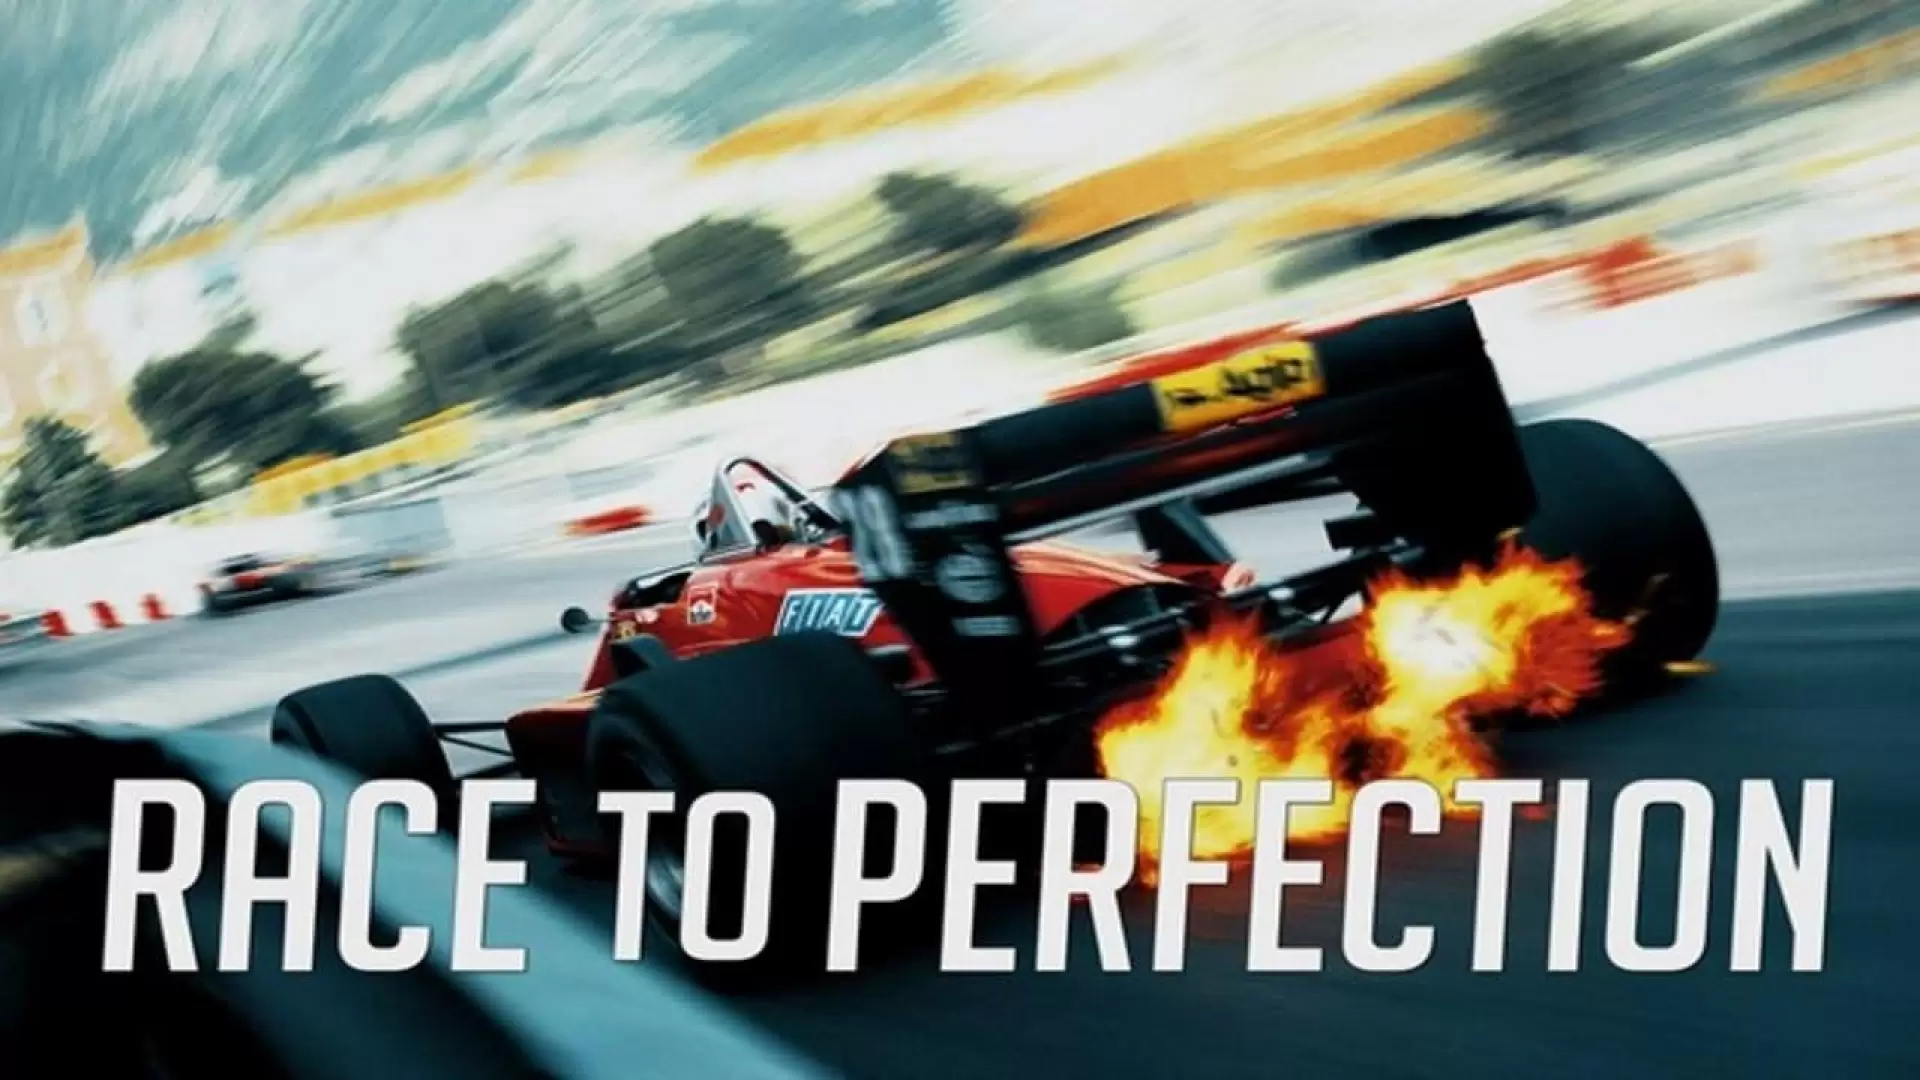 دانلود مستند Race to Perfection 2020 (عالی ترین مسابقات)